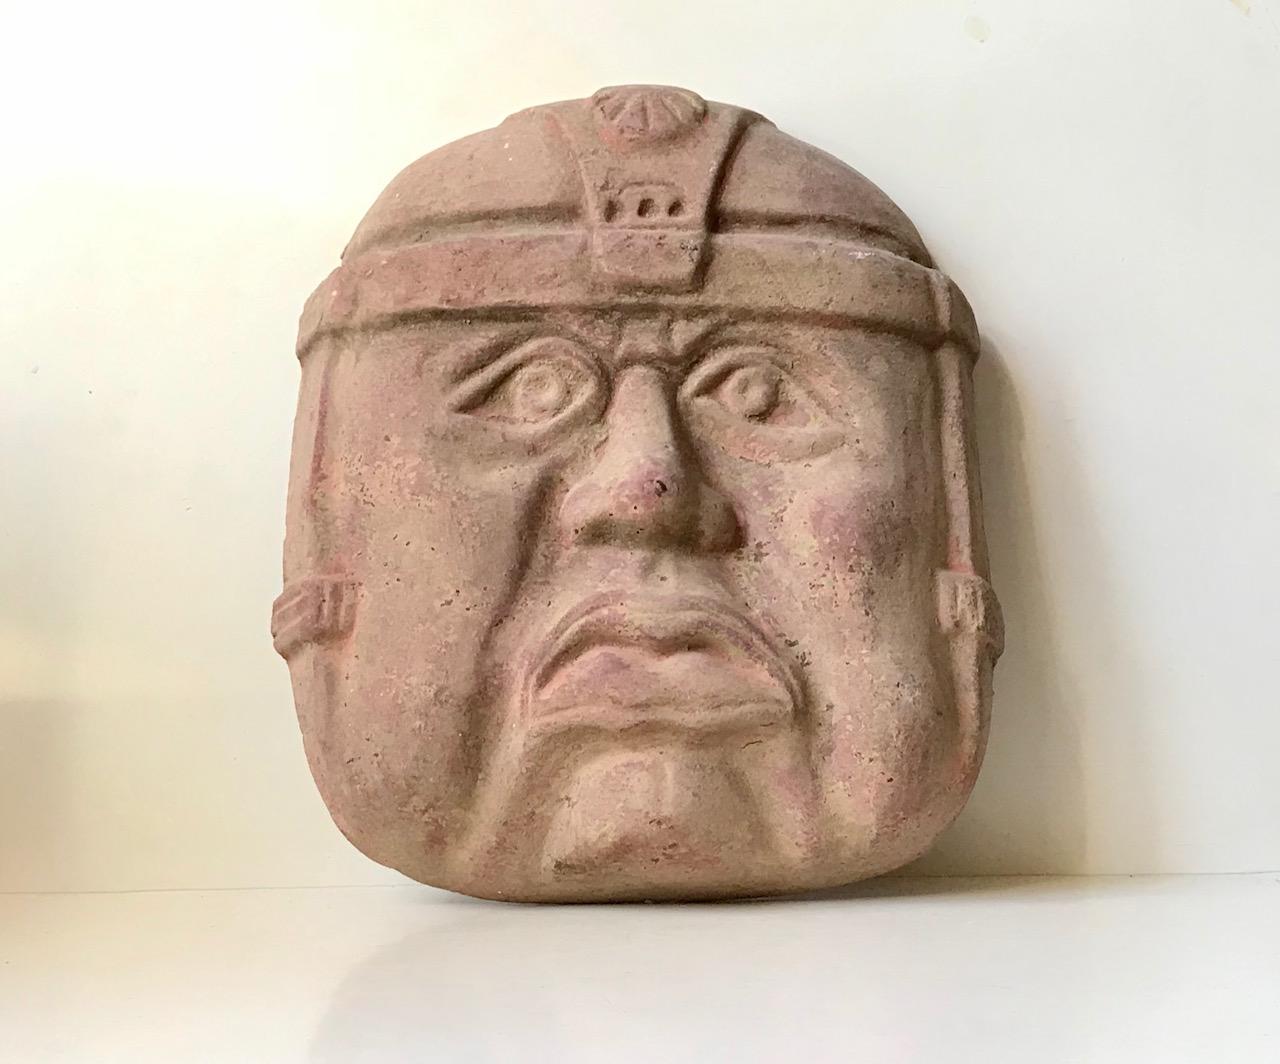 Grand (43x36x10 cm) masque mural en terre cuite brute d'un guerrier olmèque. Les Olmèques étaient une civilisation mésoaméricaine préculumbienne qui a vécu de 1200 à 400 ans avant notre ère. Cet exemple particulier est une reproduction datant des